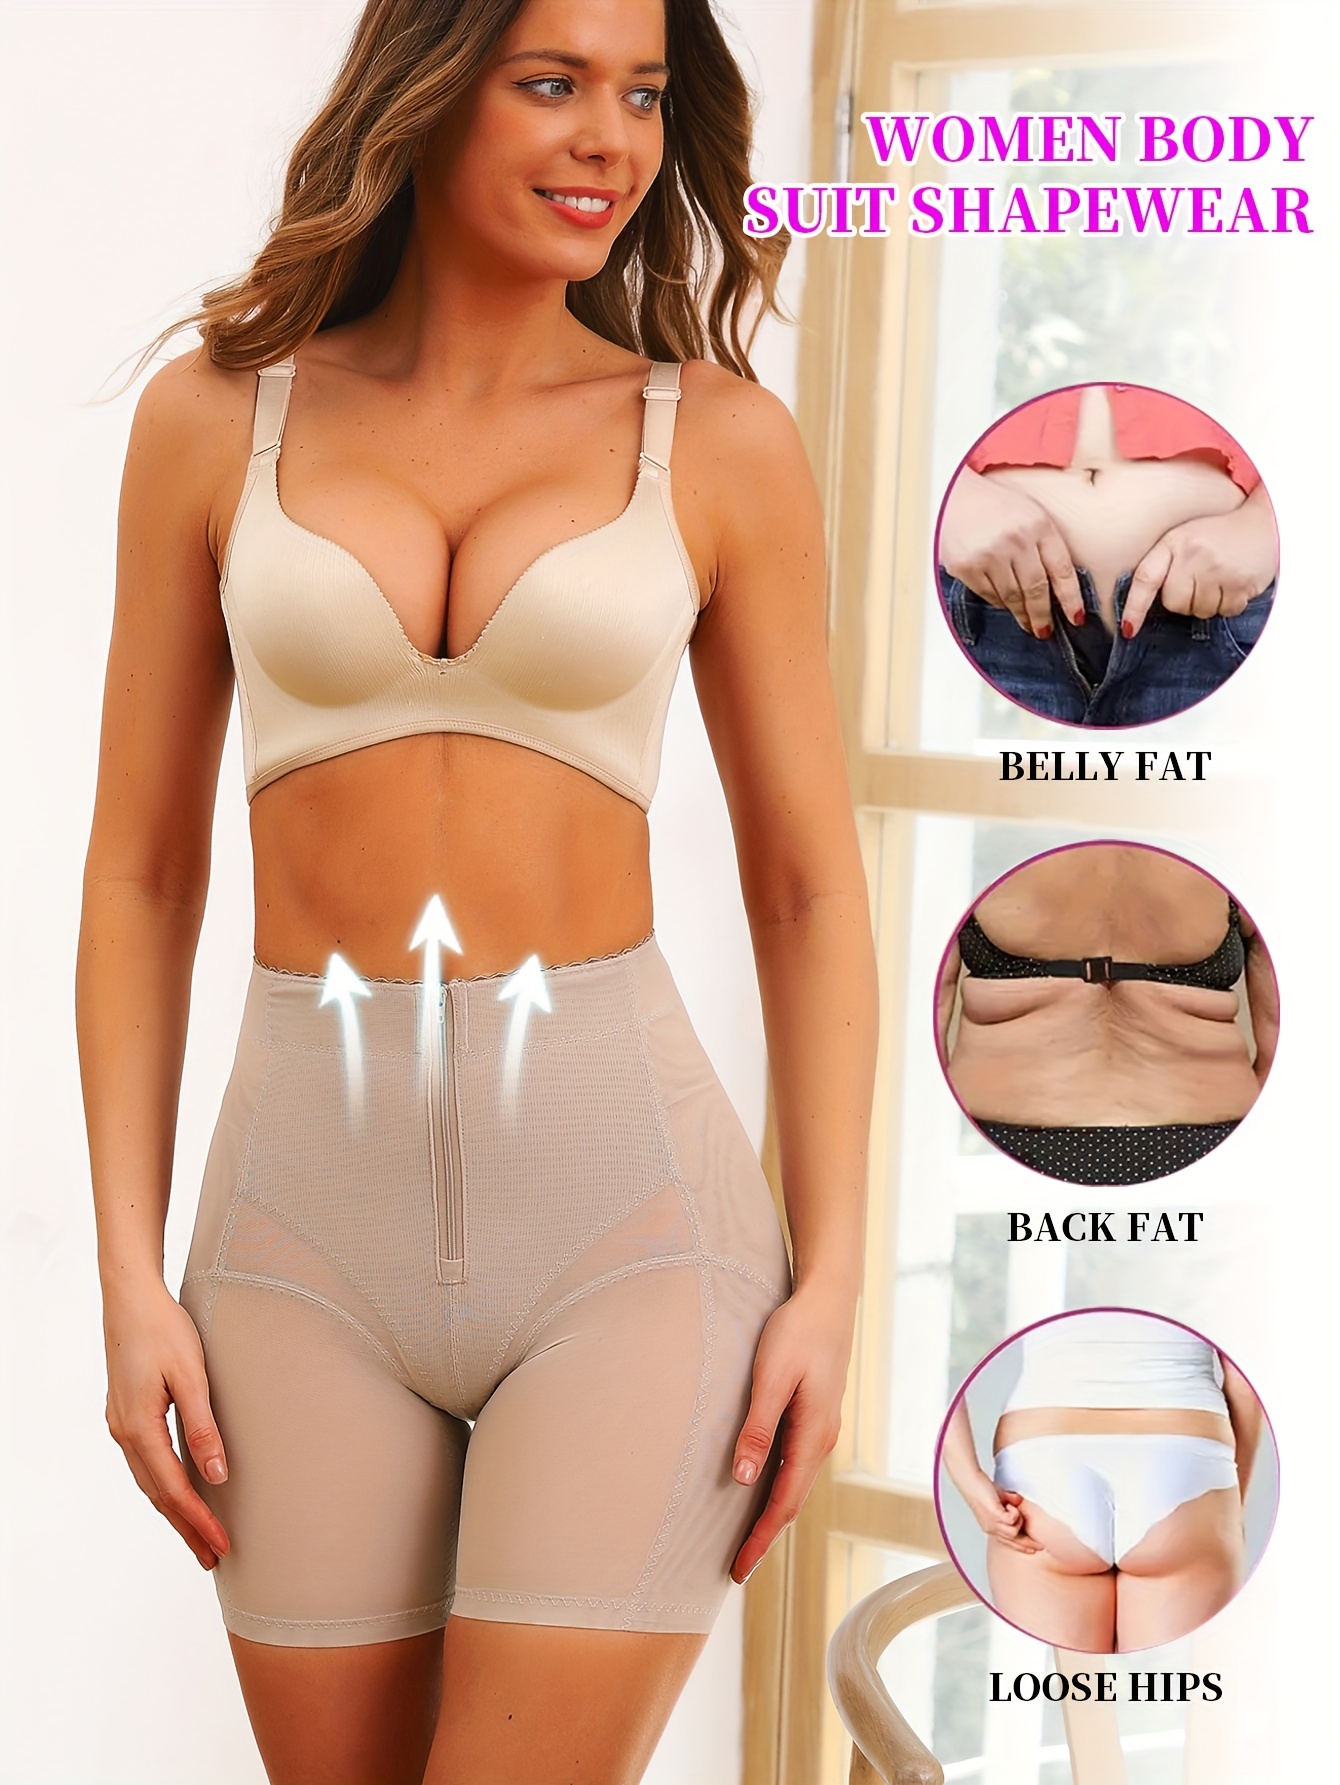 High Waist Zippered Tummy Control Underwear Women's Lower Belly